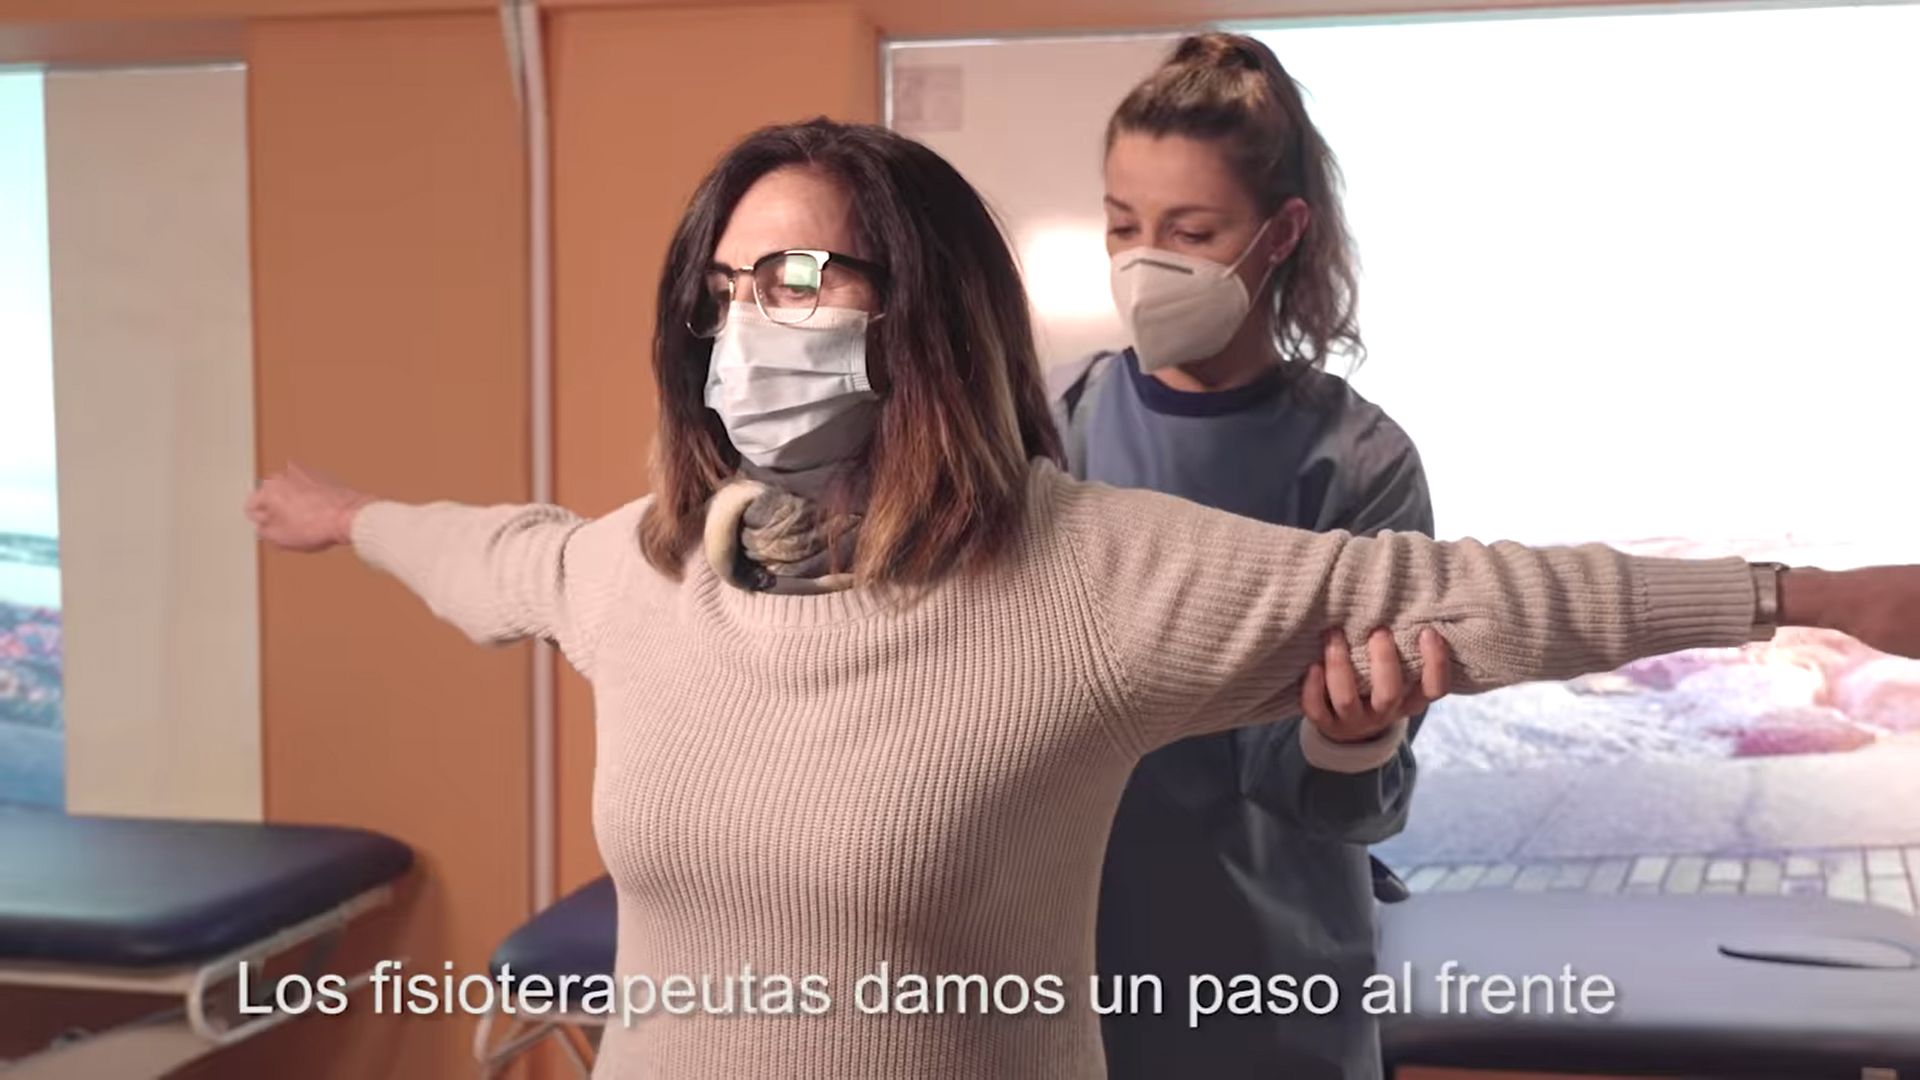 ‘La Fisioterapia te da el aire que necesitas’ de fisioterapeutas españoles